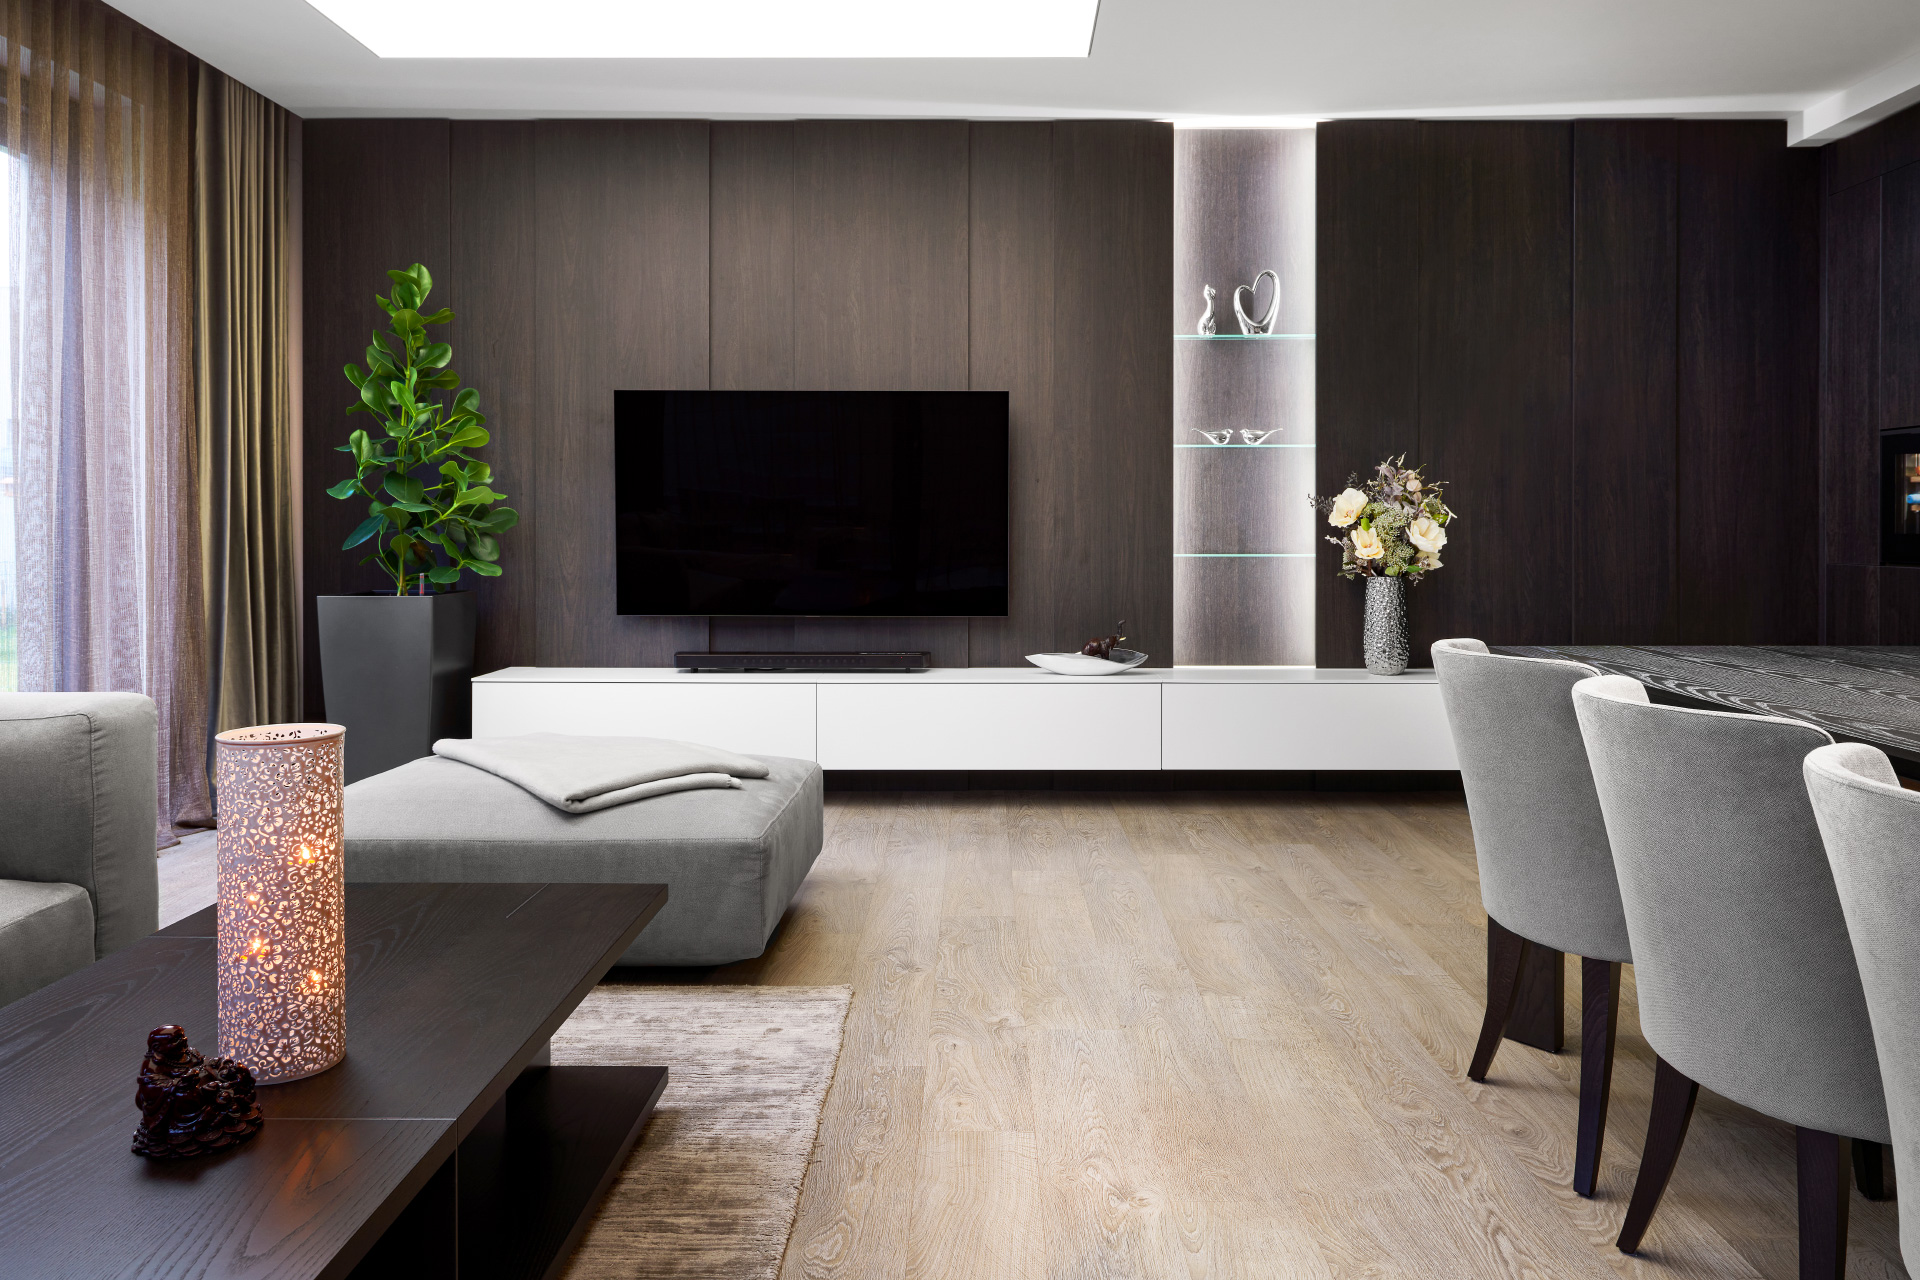 Hanák Furniture realization Complete interior